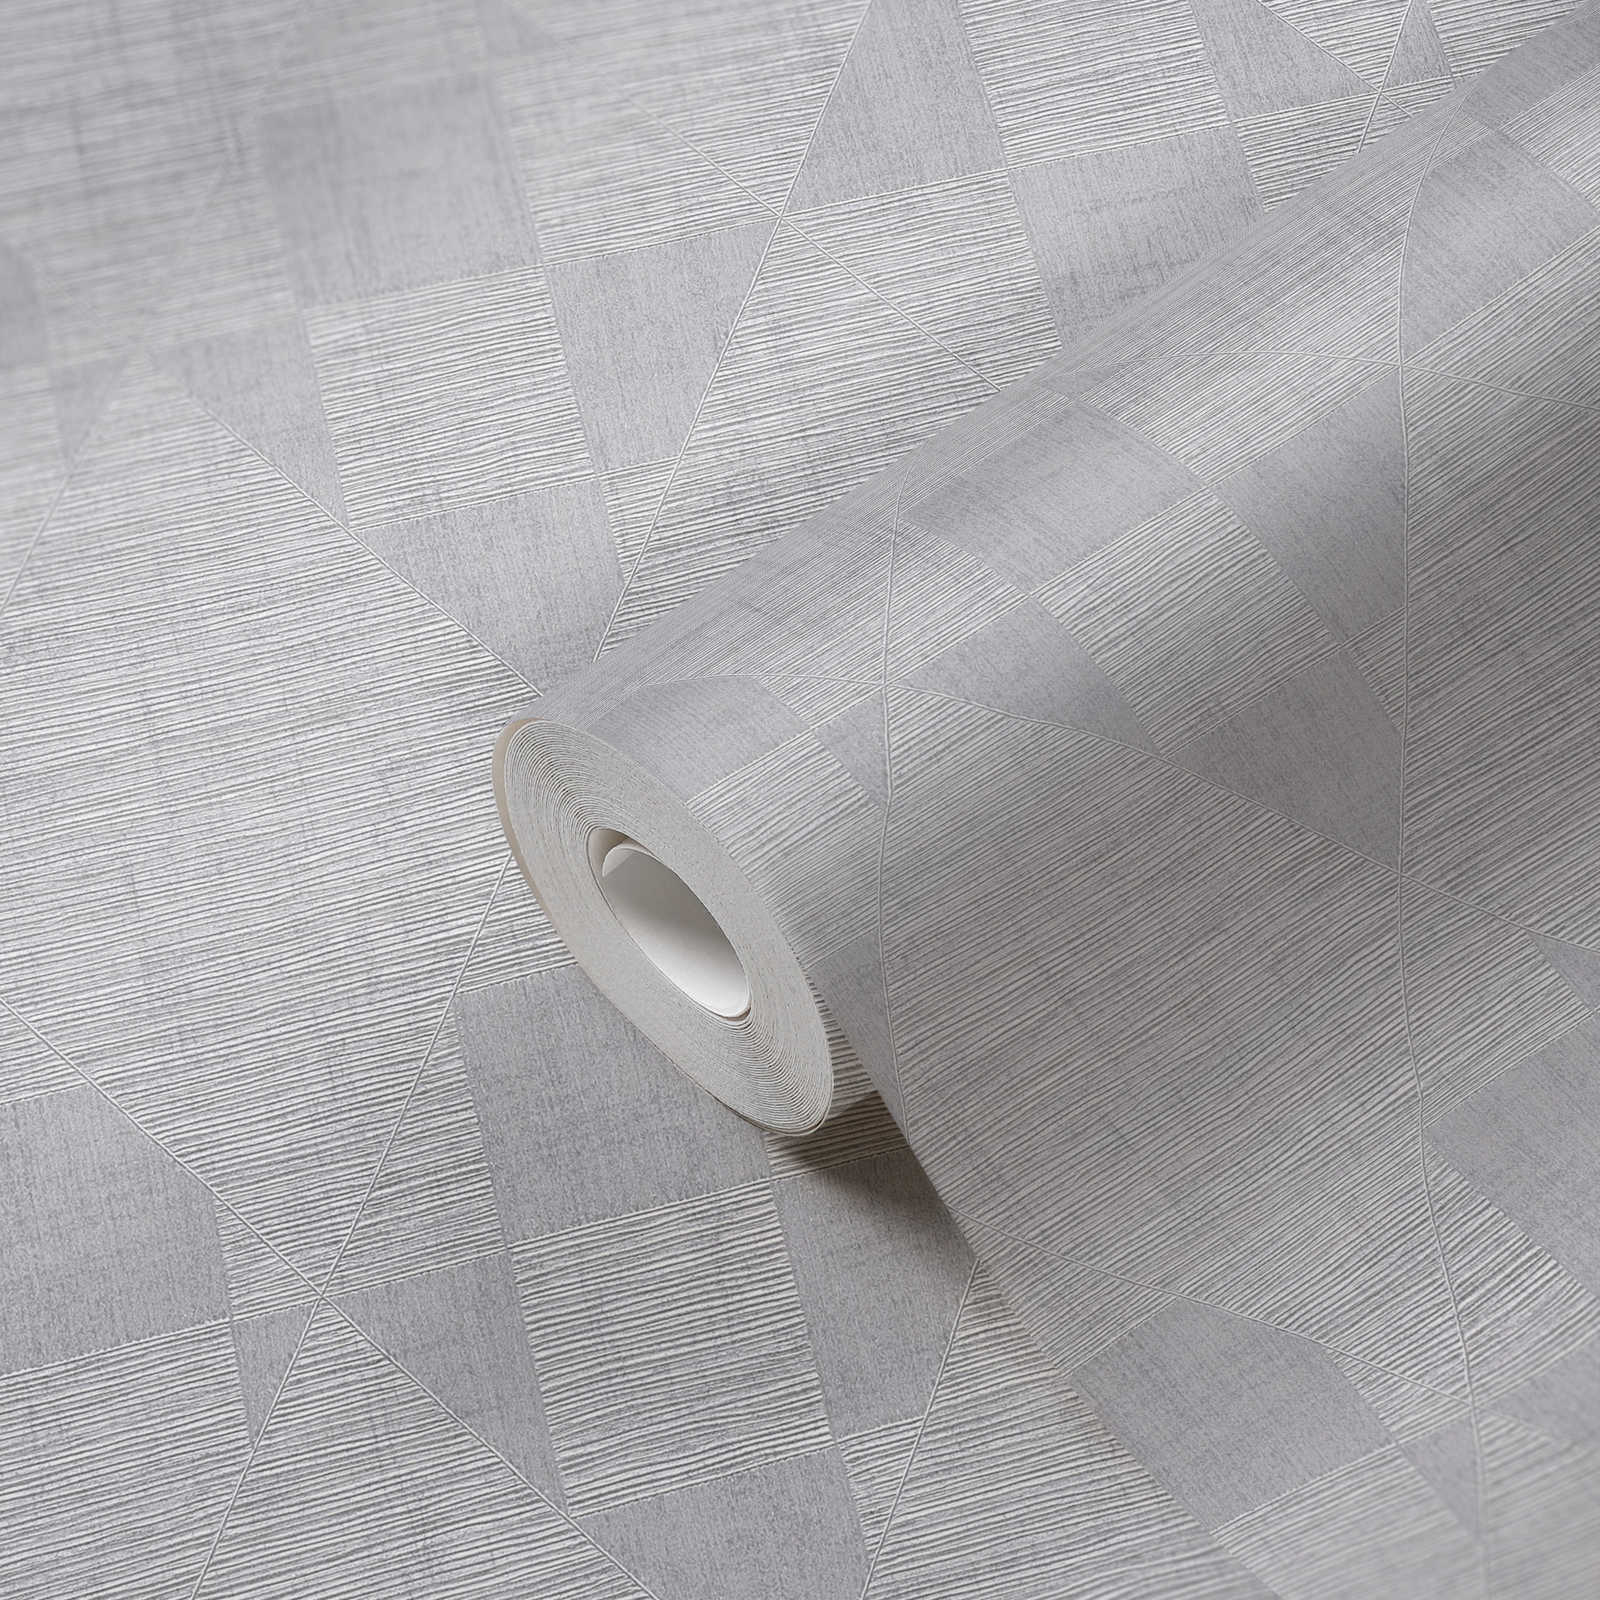             Papier peint chiné avec motif rétro et éclat métallique - gris
        